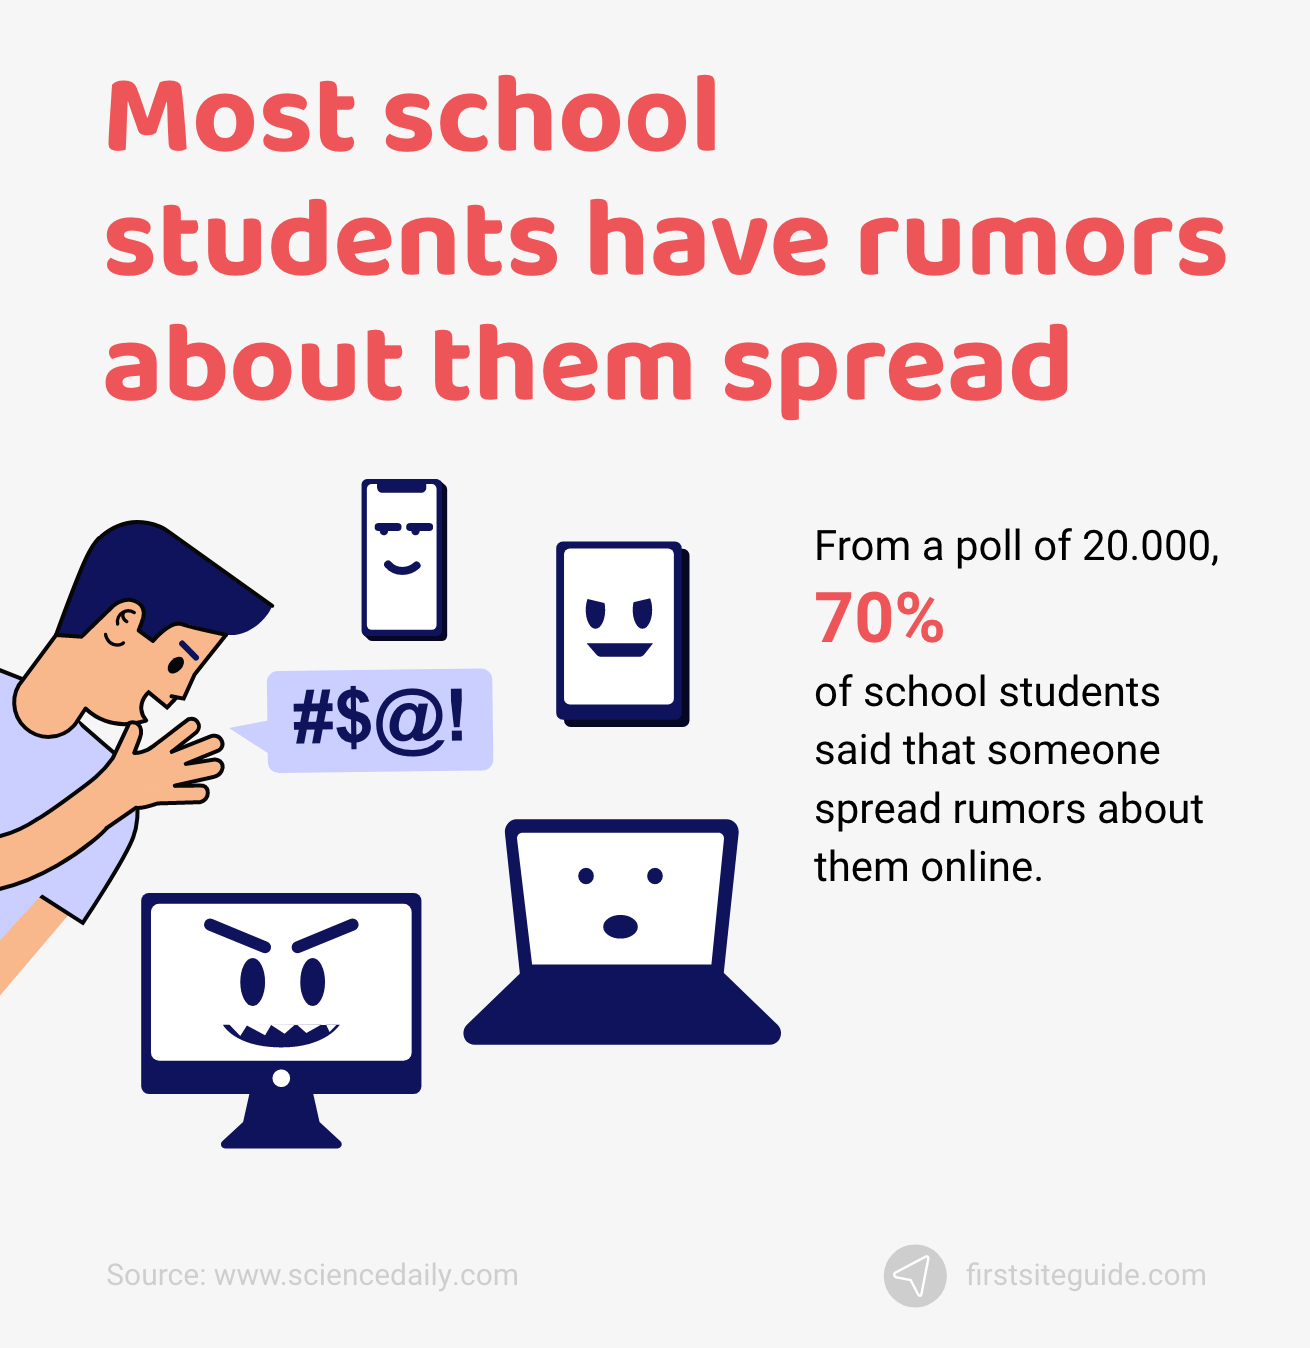 La plupart des élèves ont des rumeurs à leur sujet diffusées en ligne